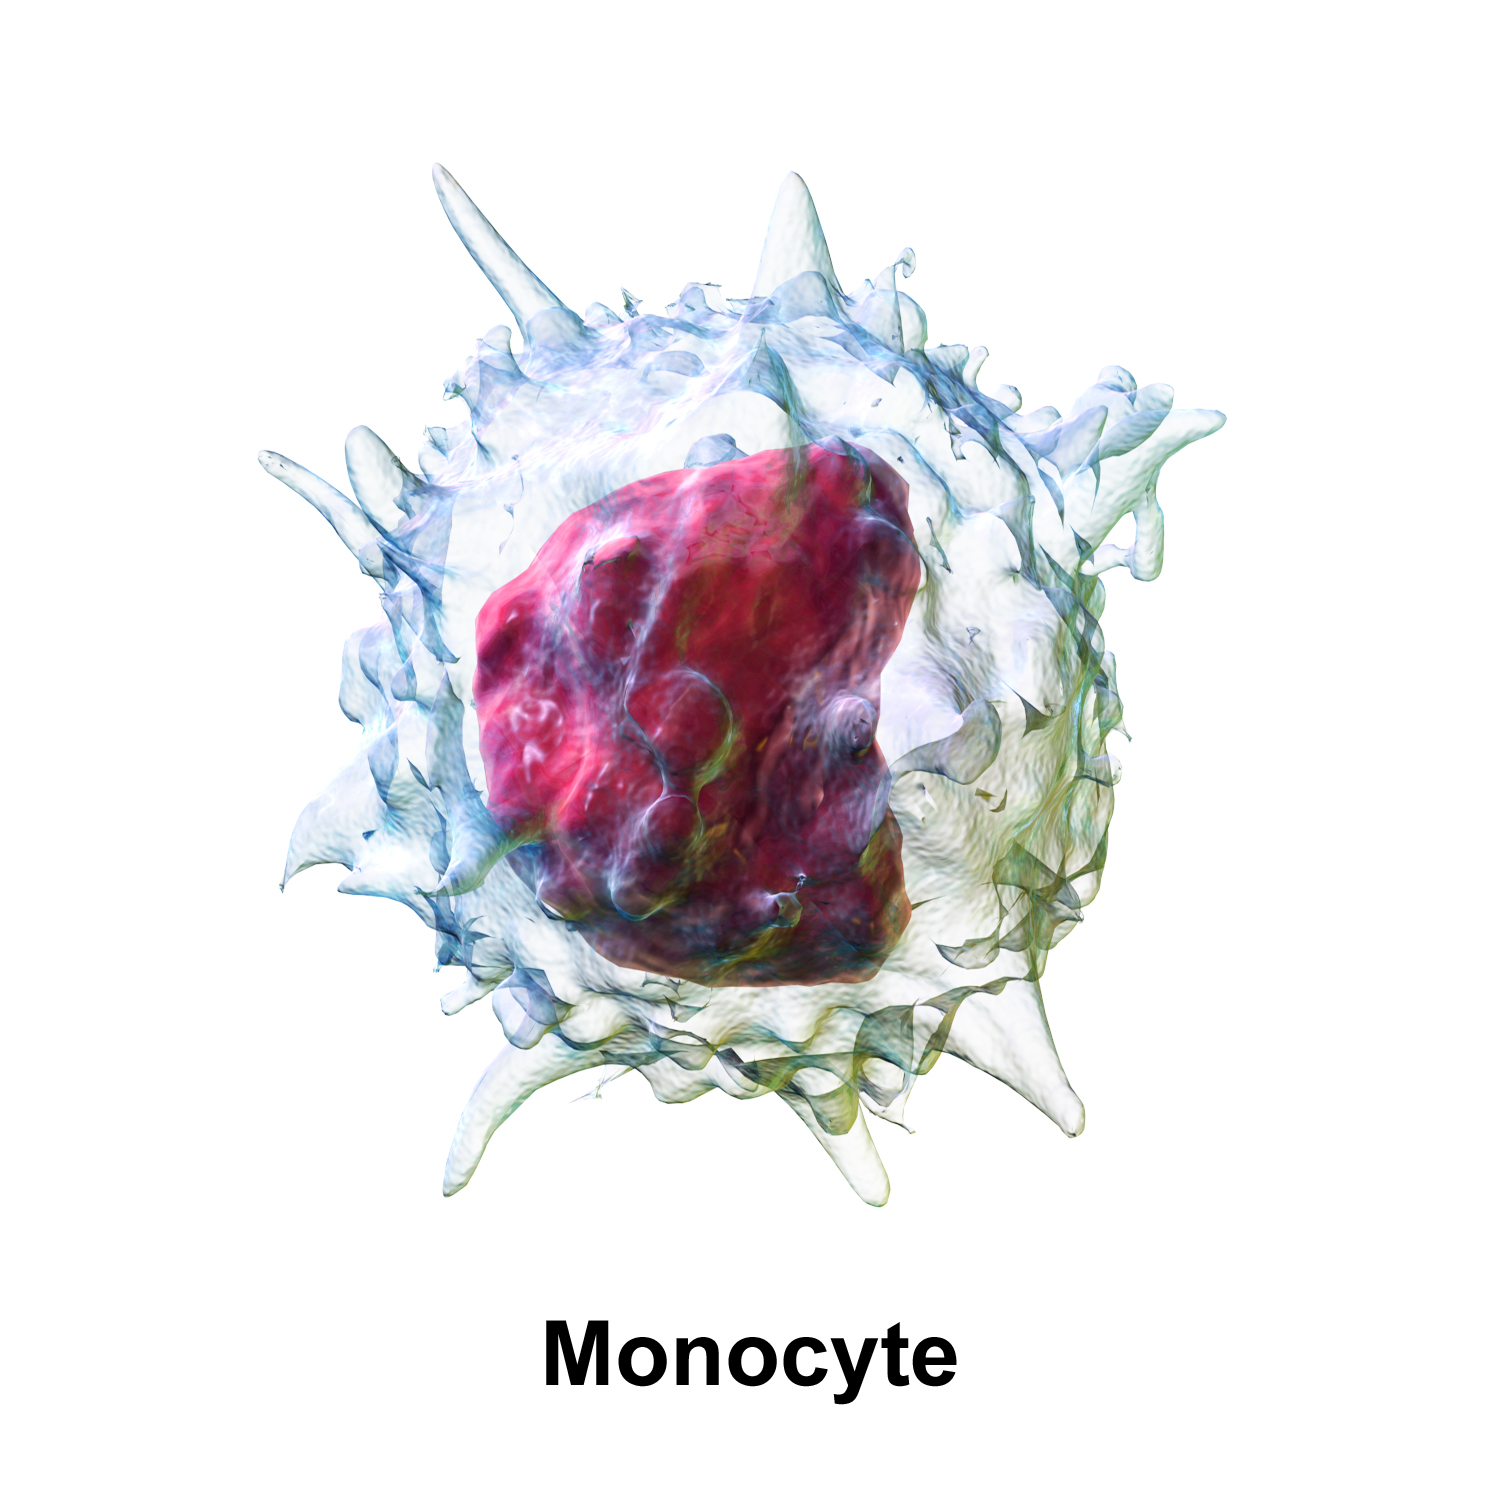 Les monocytes sont les plus grosses cellules qui circulent dans le sang. Elles jouent un rôle important dans la réaction immunitaire et sont capables de réaliser la phagocytose. Elles sont aussi impliquées dans la réponse inflammatoire, notamment celle qui se produit en excès après une crise cardiaque.&nbsp;Grâce&nbsp;à des microbilles de plastique chargées négativement, des chercheurs états-uniens ont pu neutraliser ces cellules et réduire l’inflammation. © BruceBlaus, Wikimedia Commons, cc by 3.0